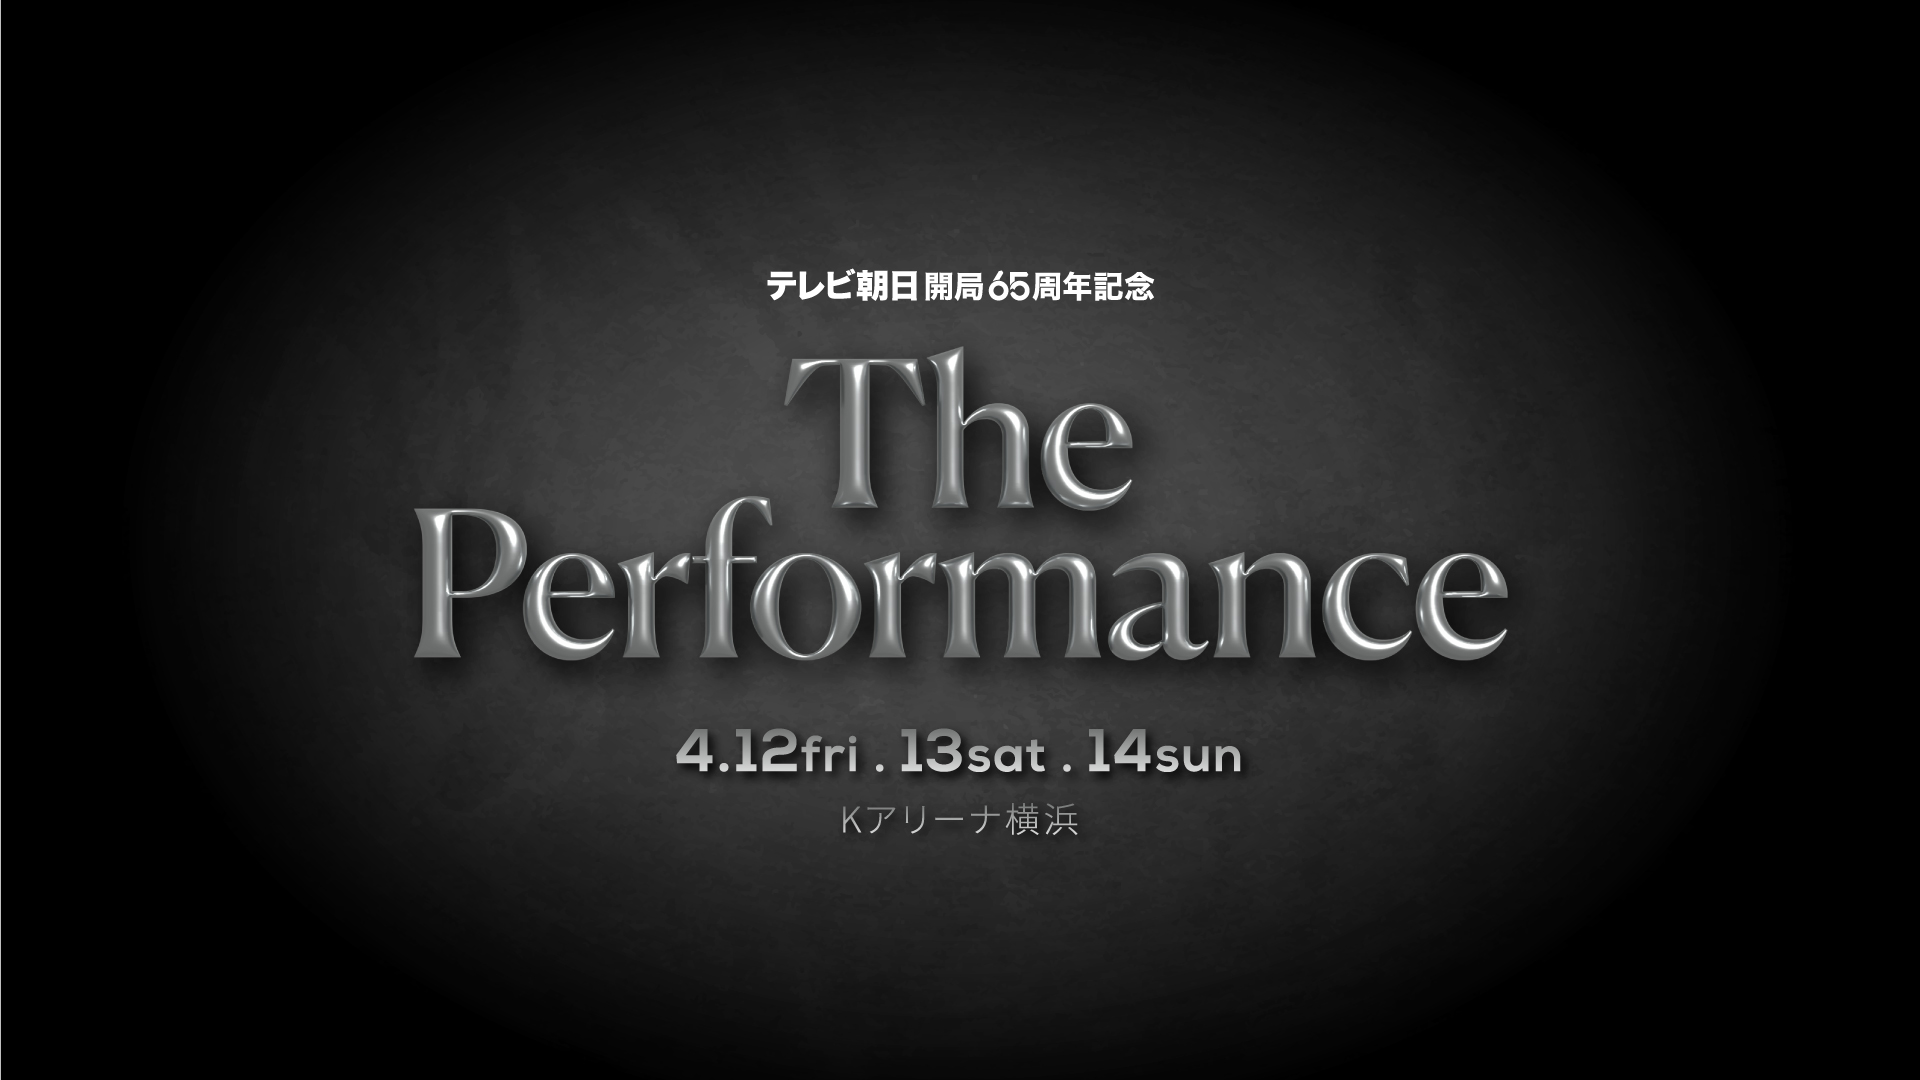 テレビ朝日開局65周年記念「The Performance」 - background